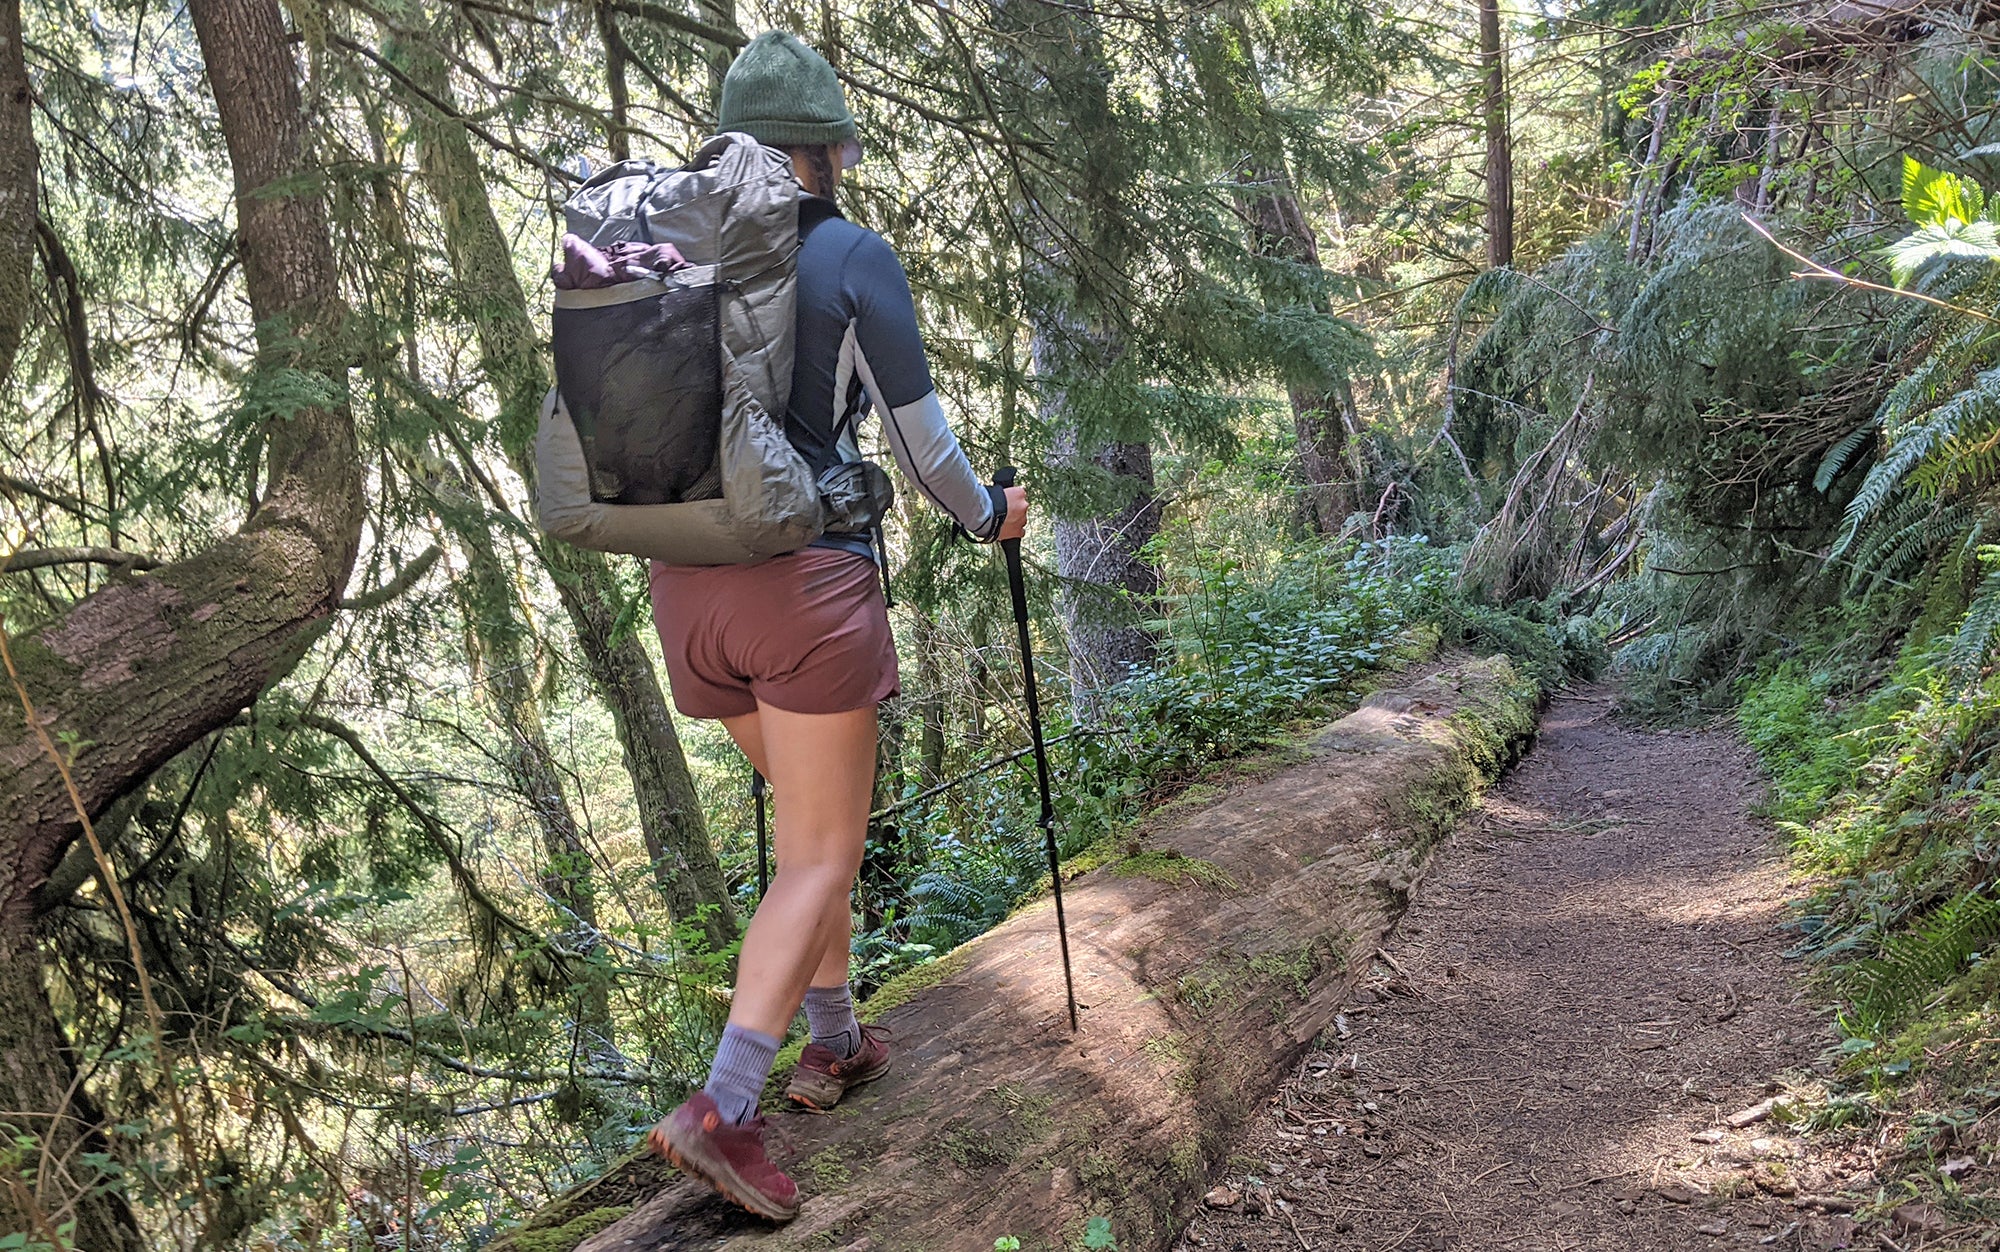 The author uses CMTâs sturdy and reliable value trekking poles to balance on a log.